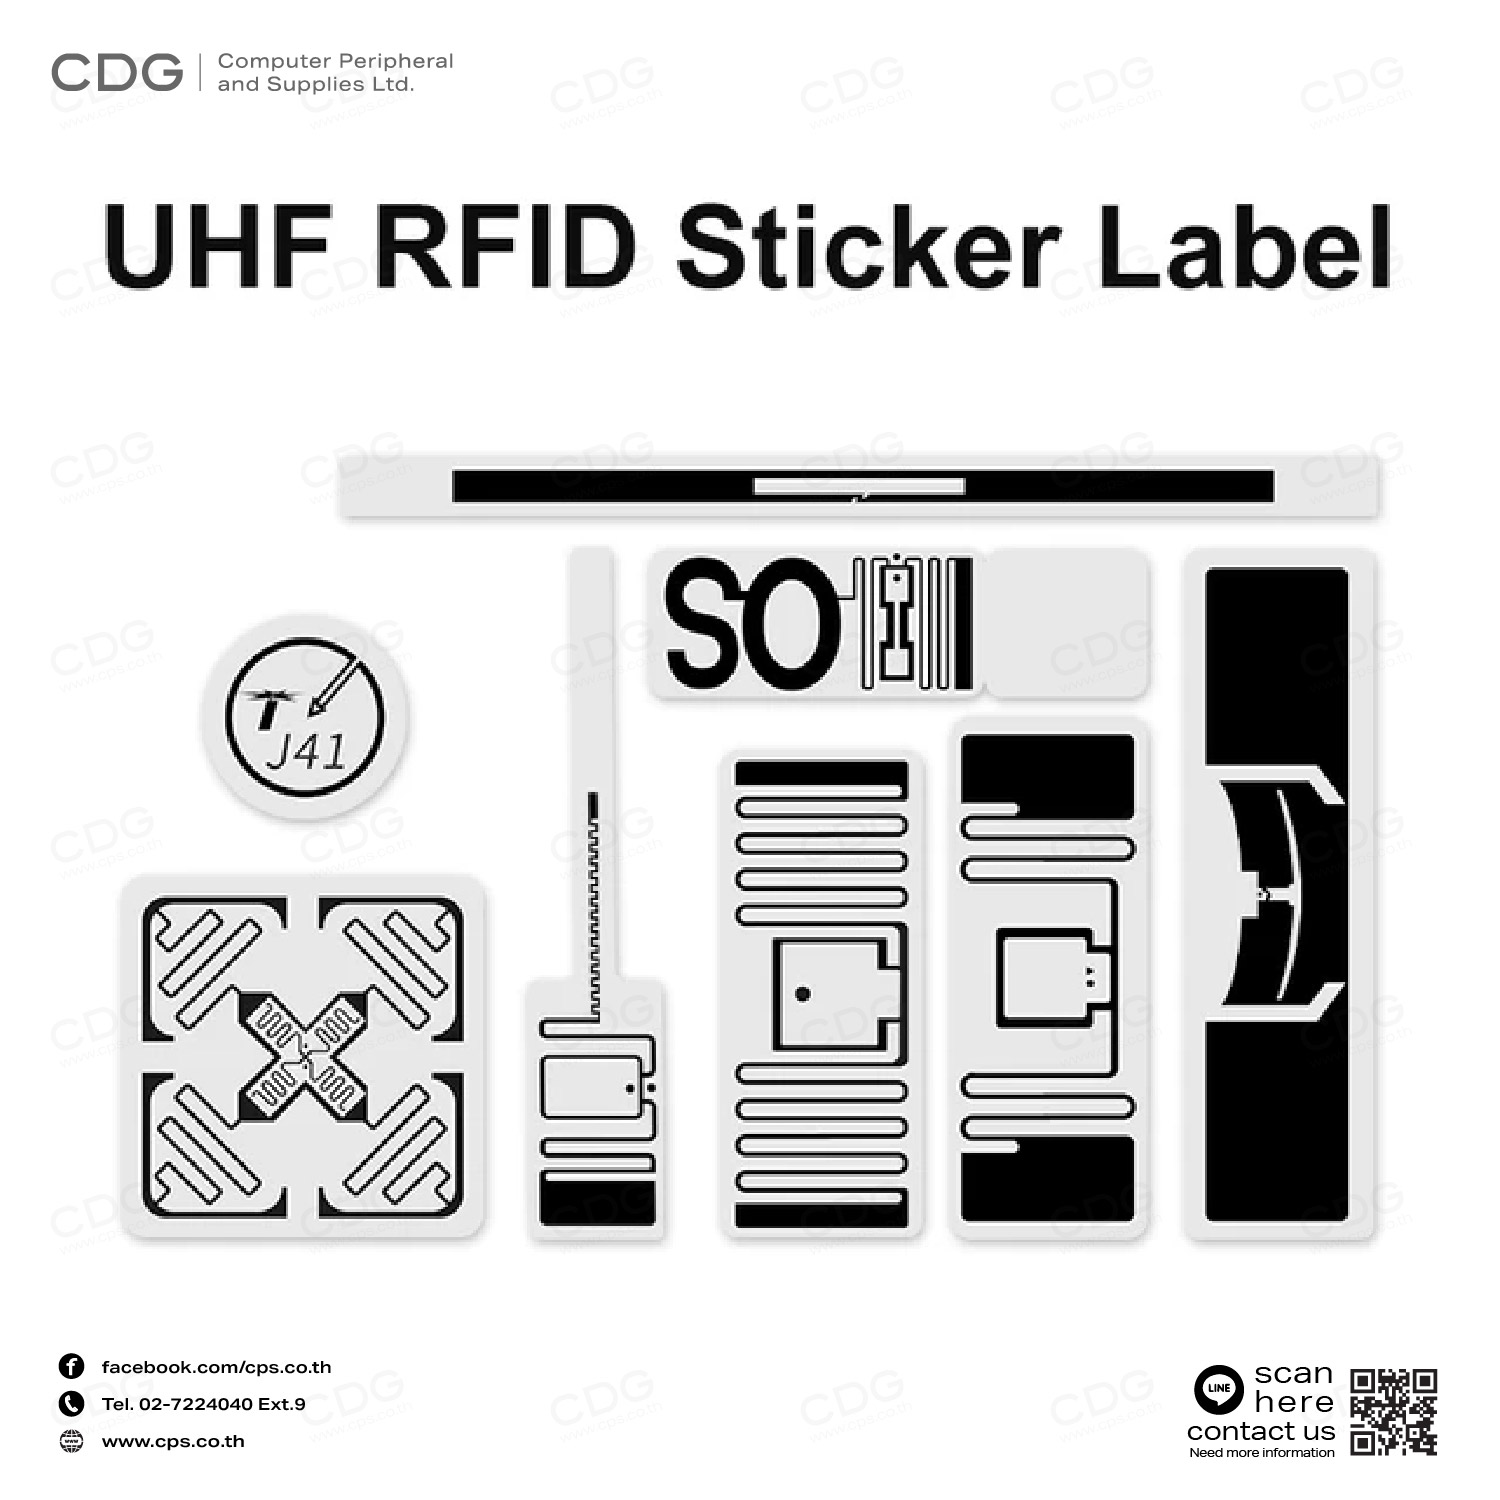 RFID UHF Tag Label Adhesive 73x24